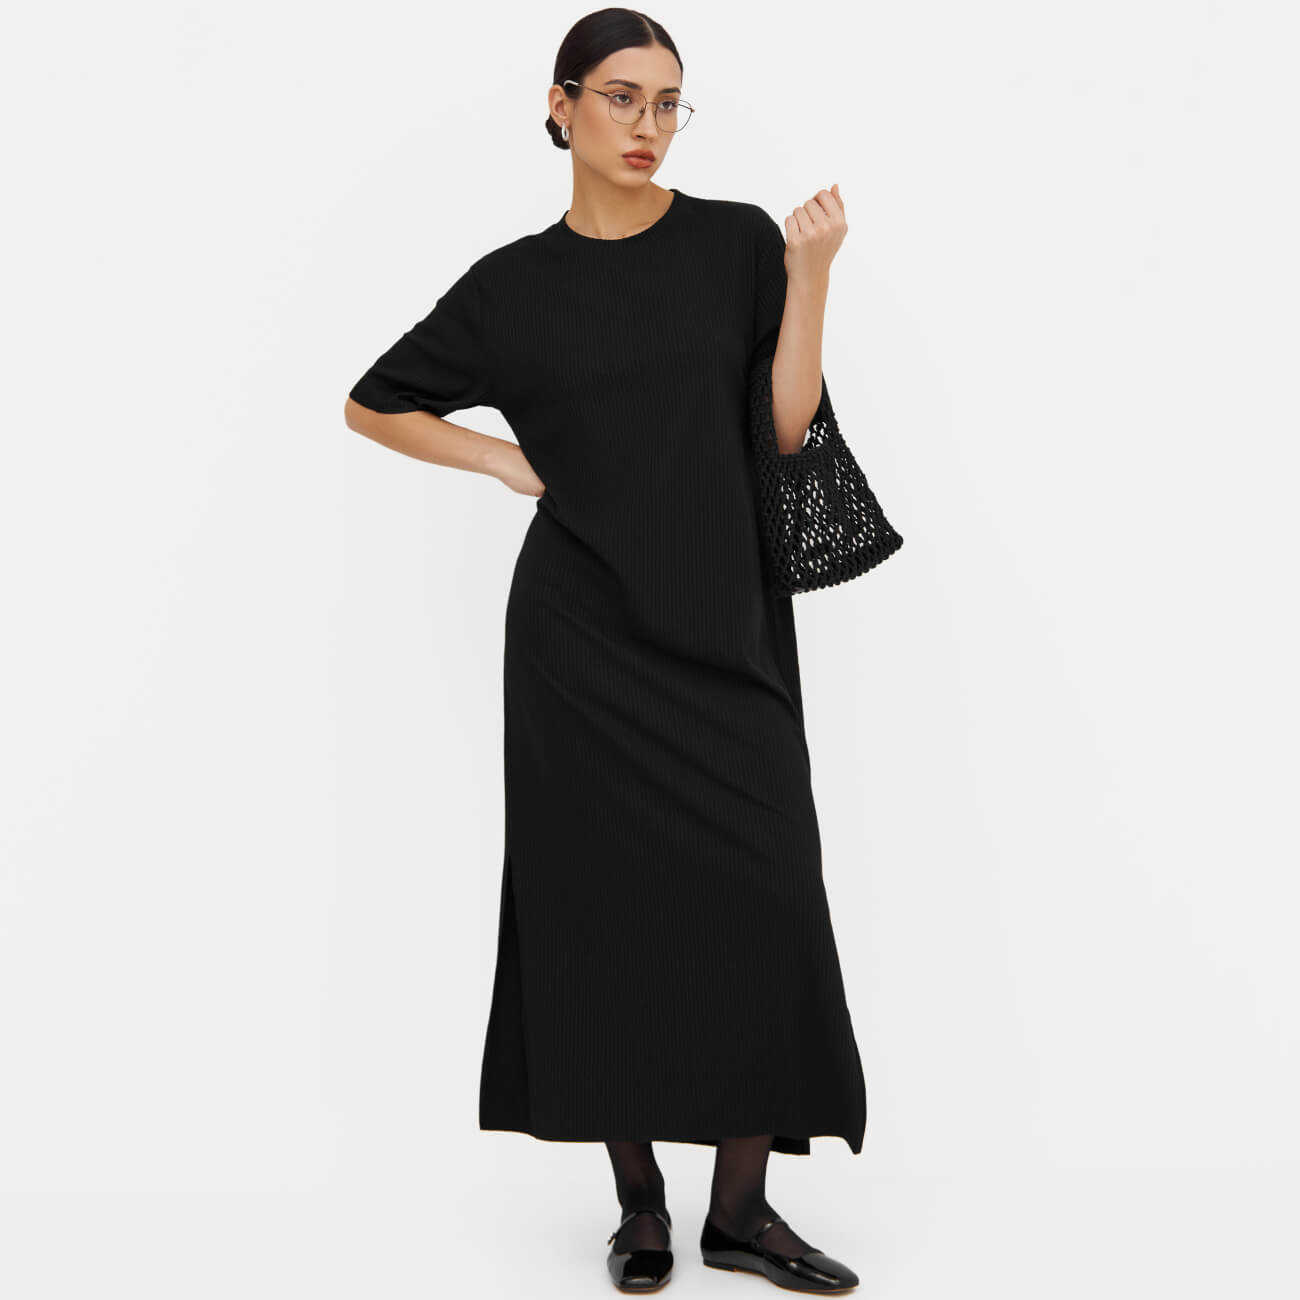 Платье женское, макси, р. S, с коротким рукавом, в рубчик, полиэстер/вискоза, черное, Rhea платье рубашка женское мини р xl с коротким рукавом хлопок черное ottavia